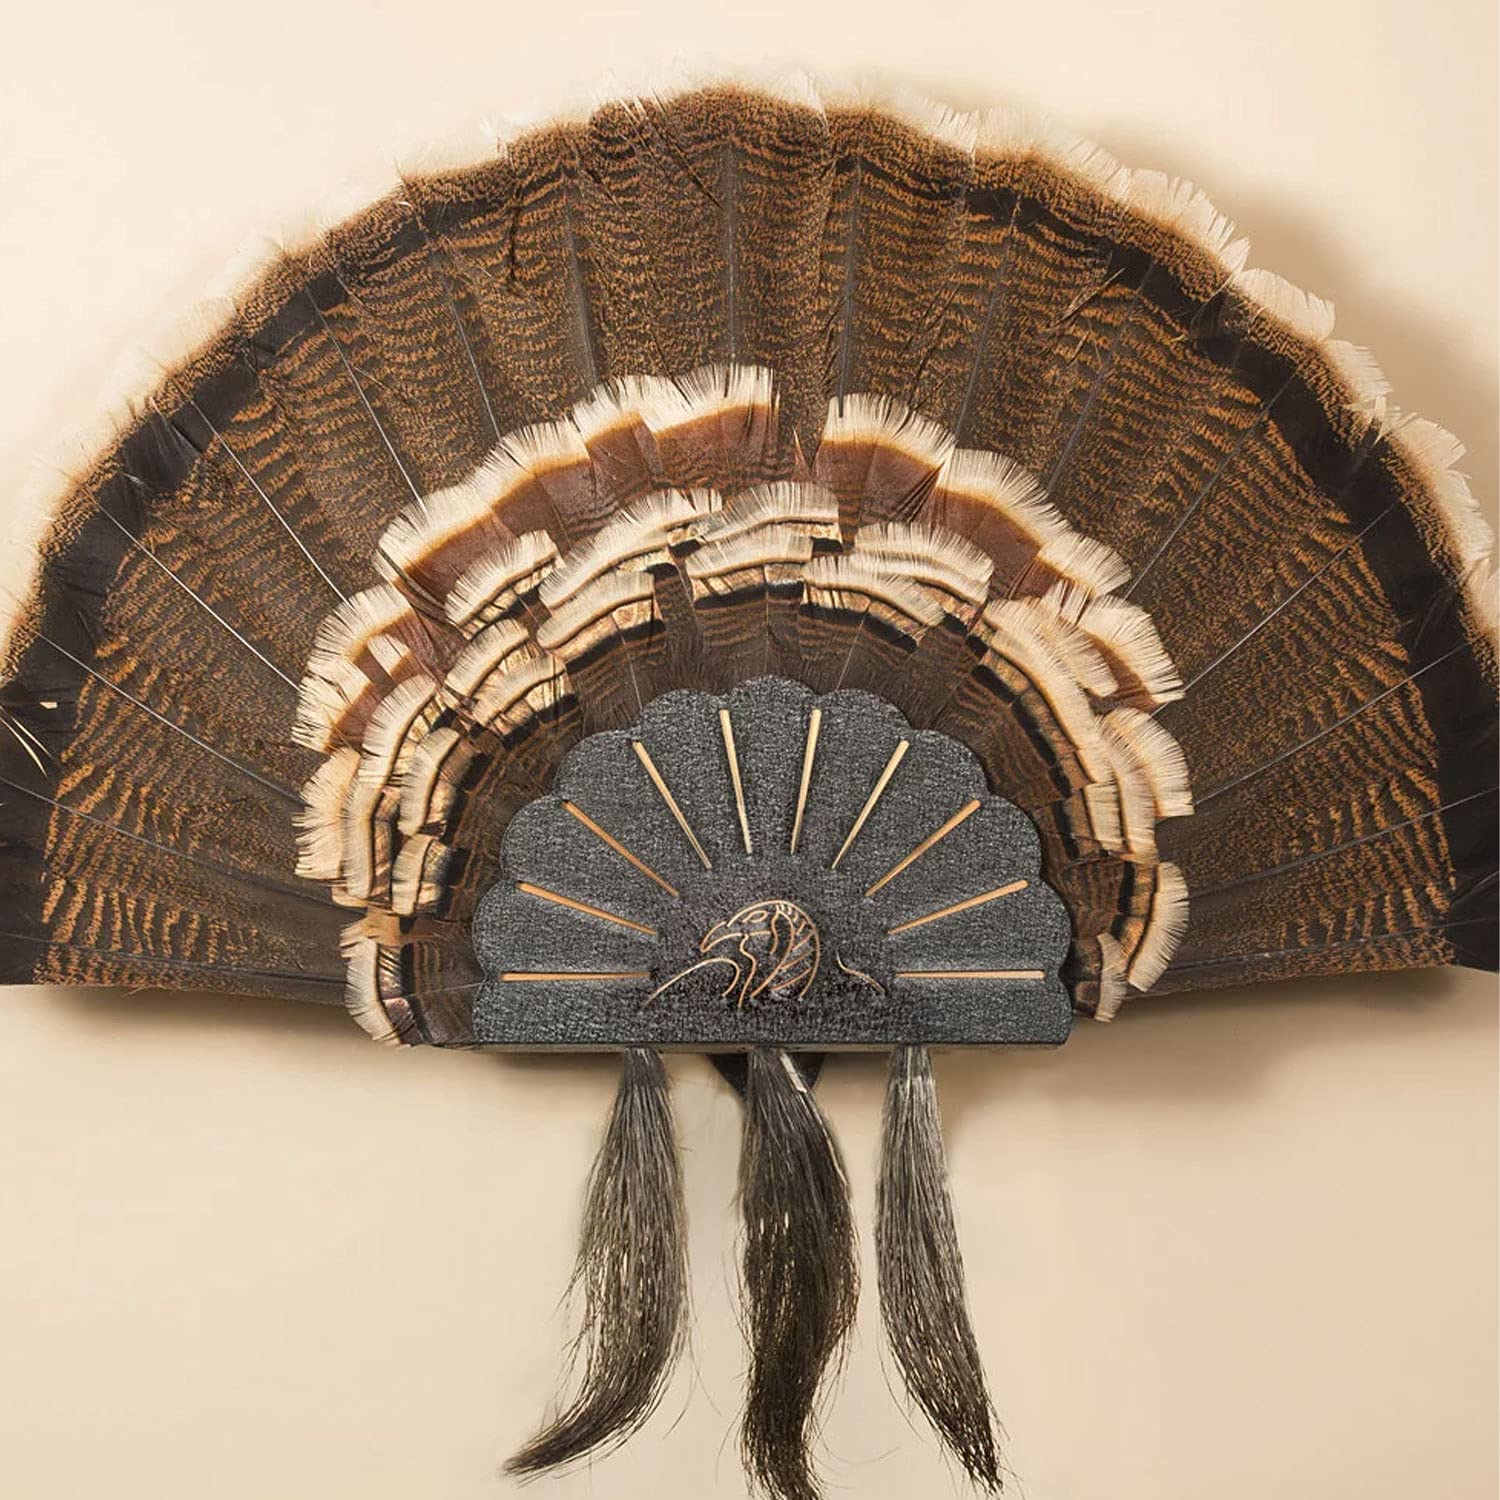 turkey fan mount plaques skull hooker